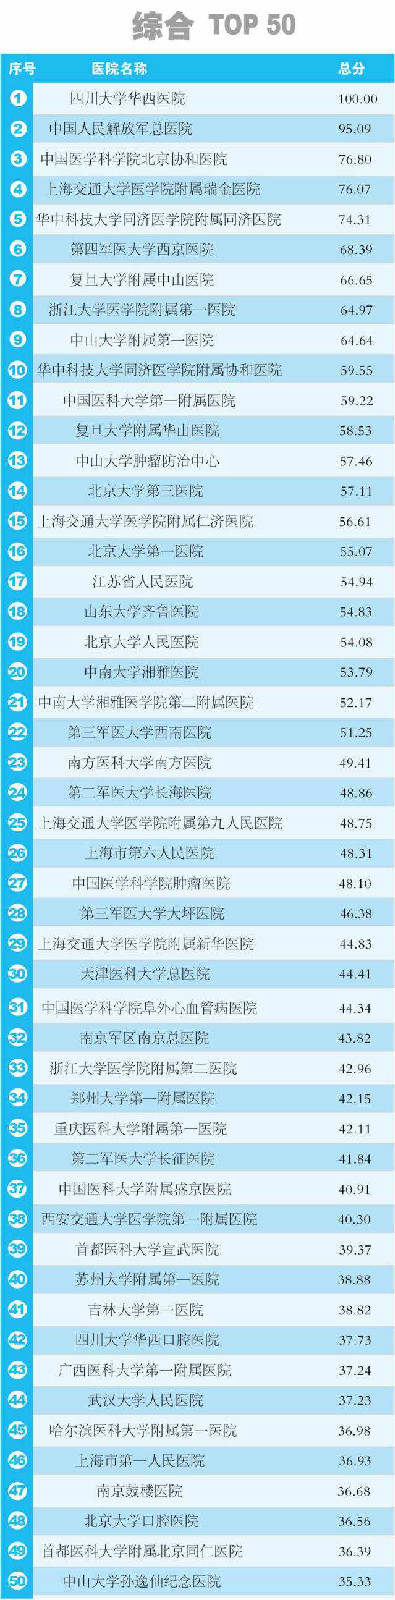 2014中國醫院科技影響力排行榜